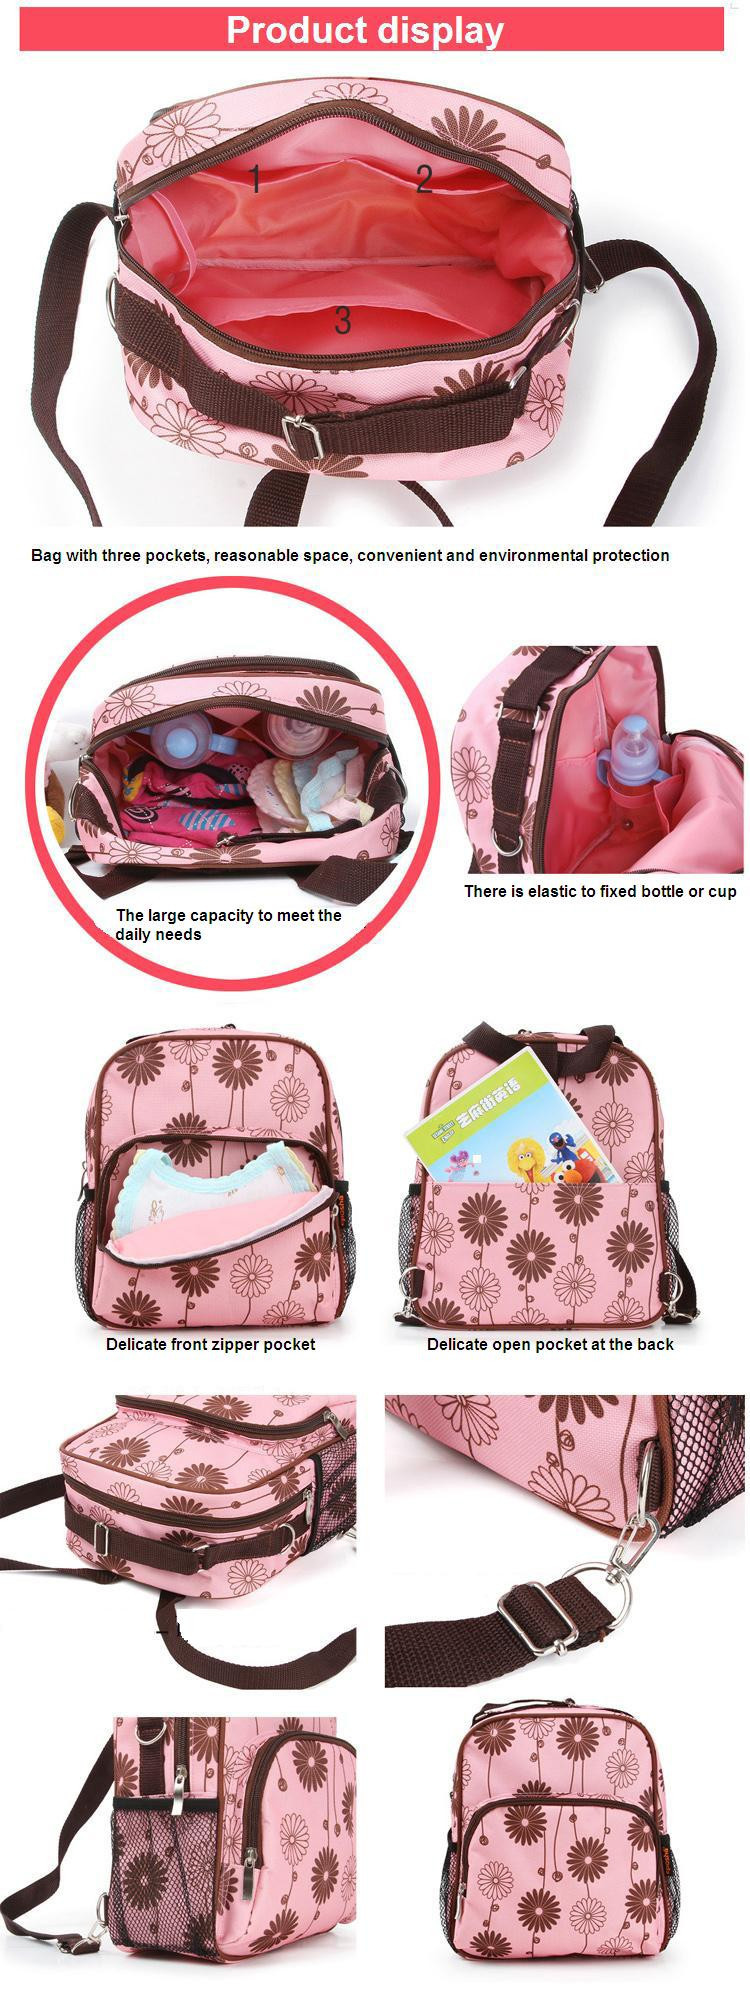 diaper-backpack-bag-2